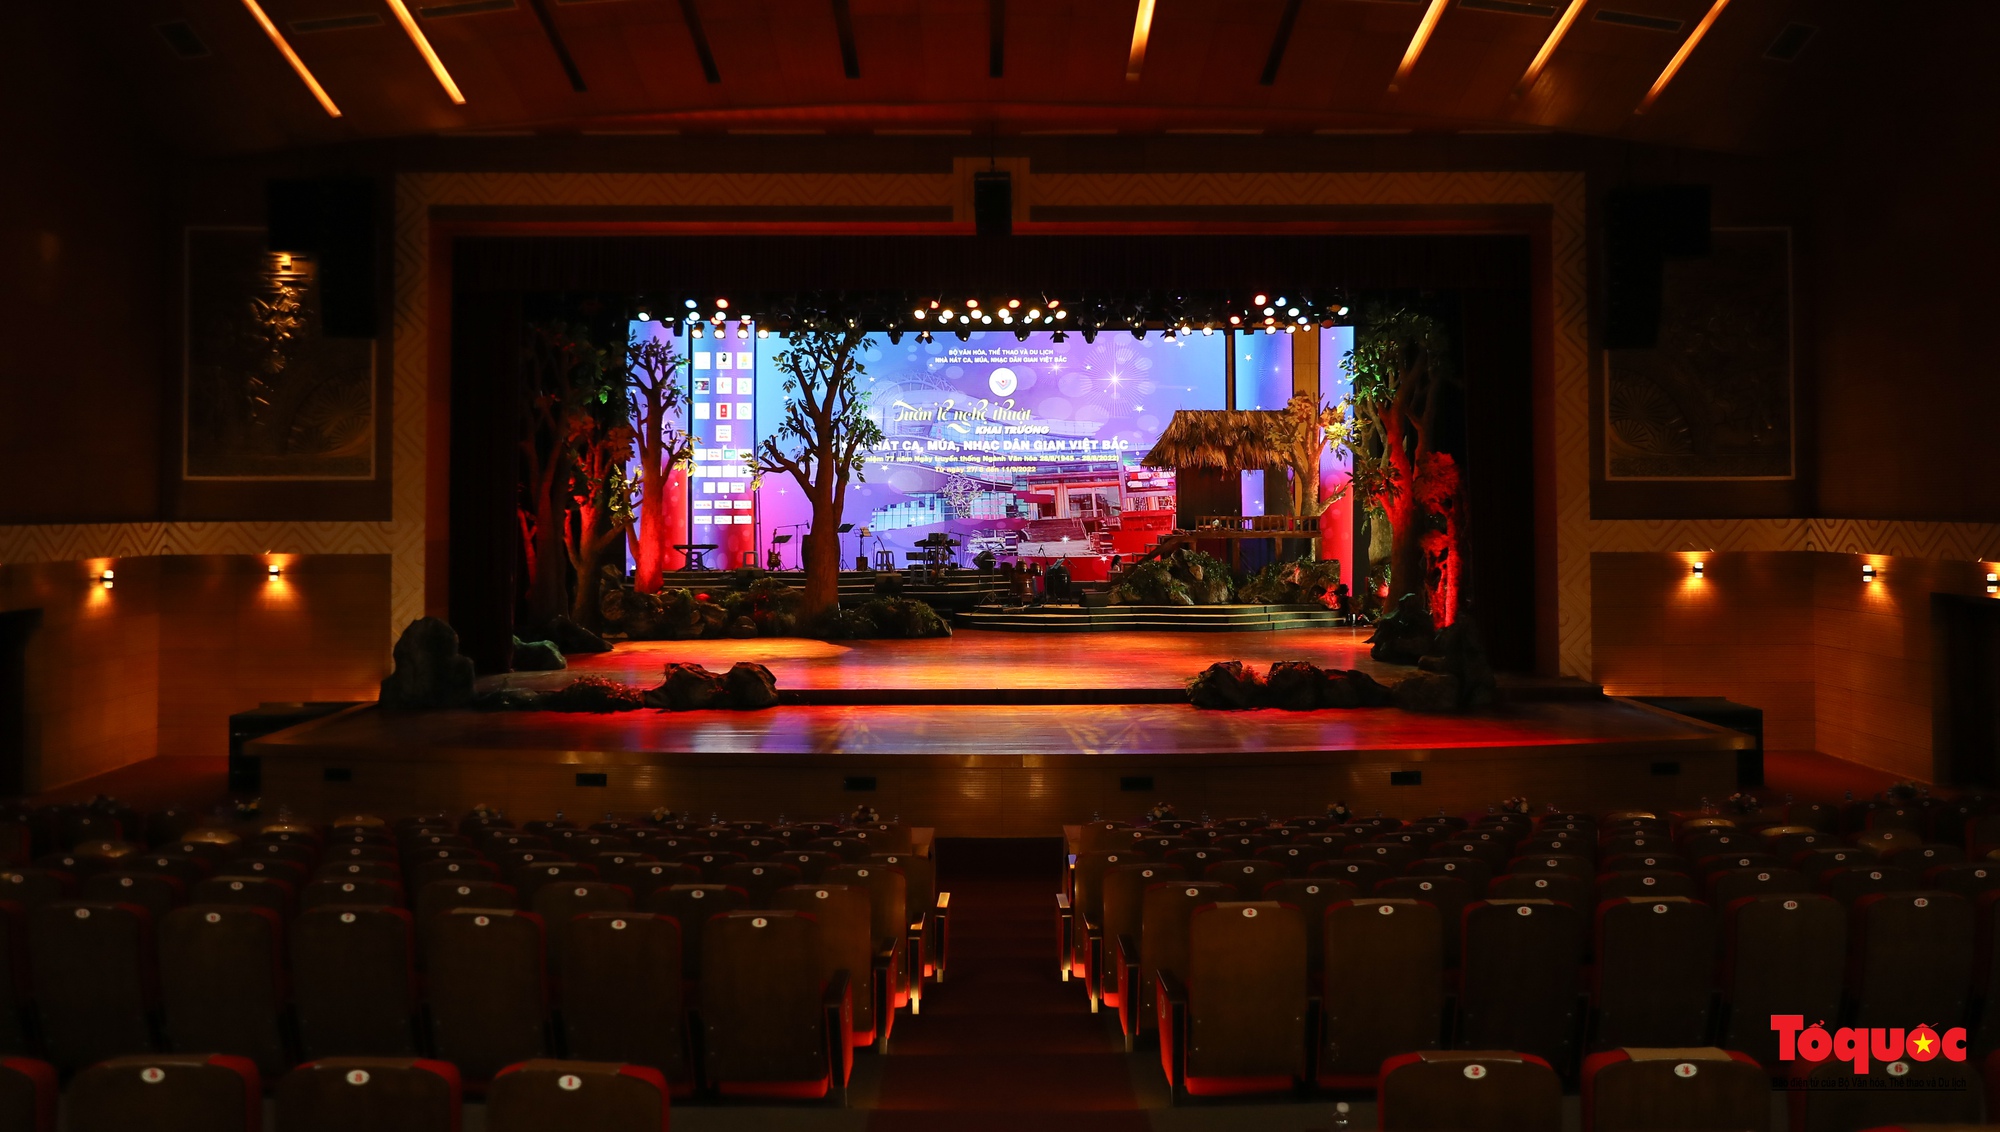 Mục sở thị Nhà hát Ca múa, nhạc dân gian hiện đại nhất khu vực Việt Bắc - Ảnh 7.